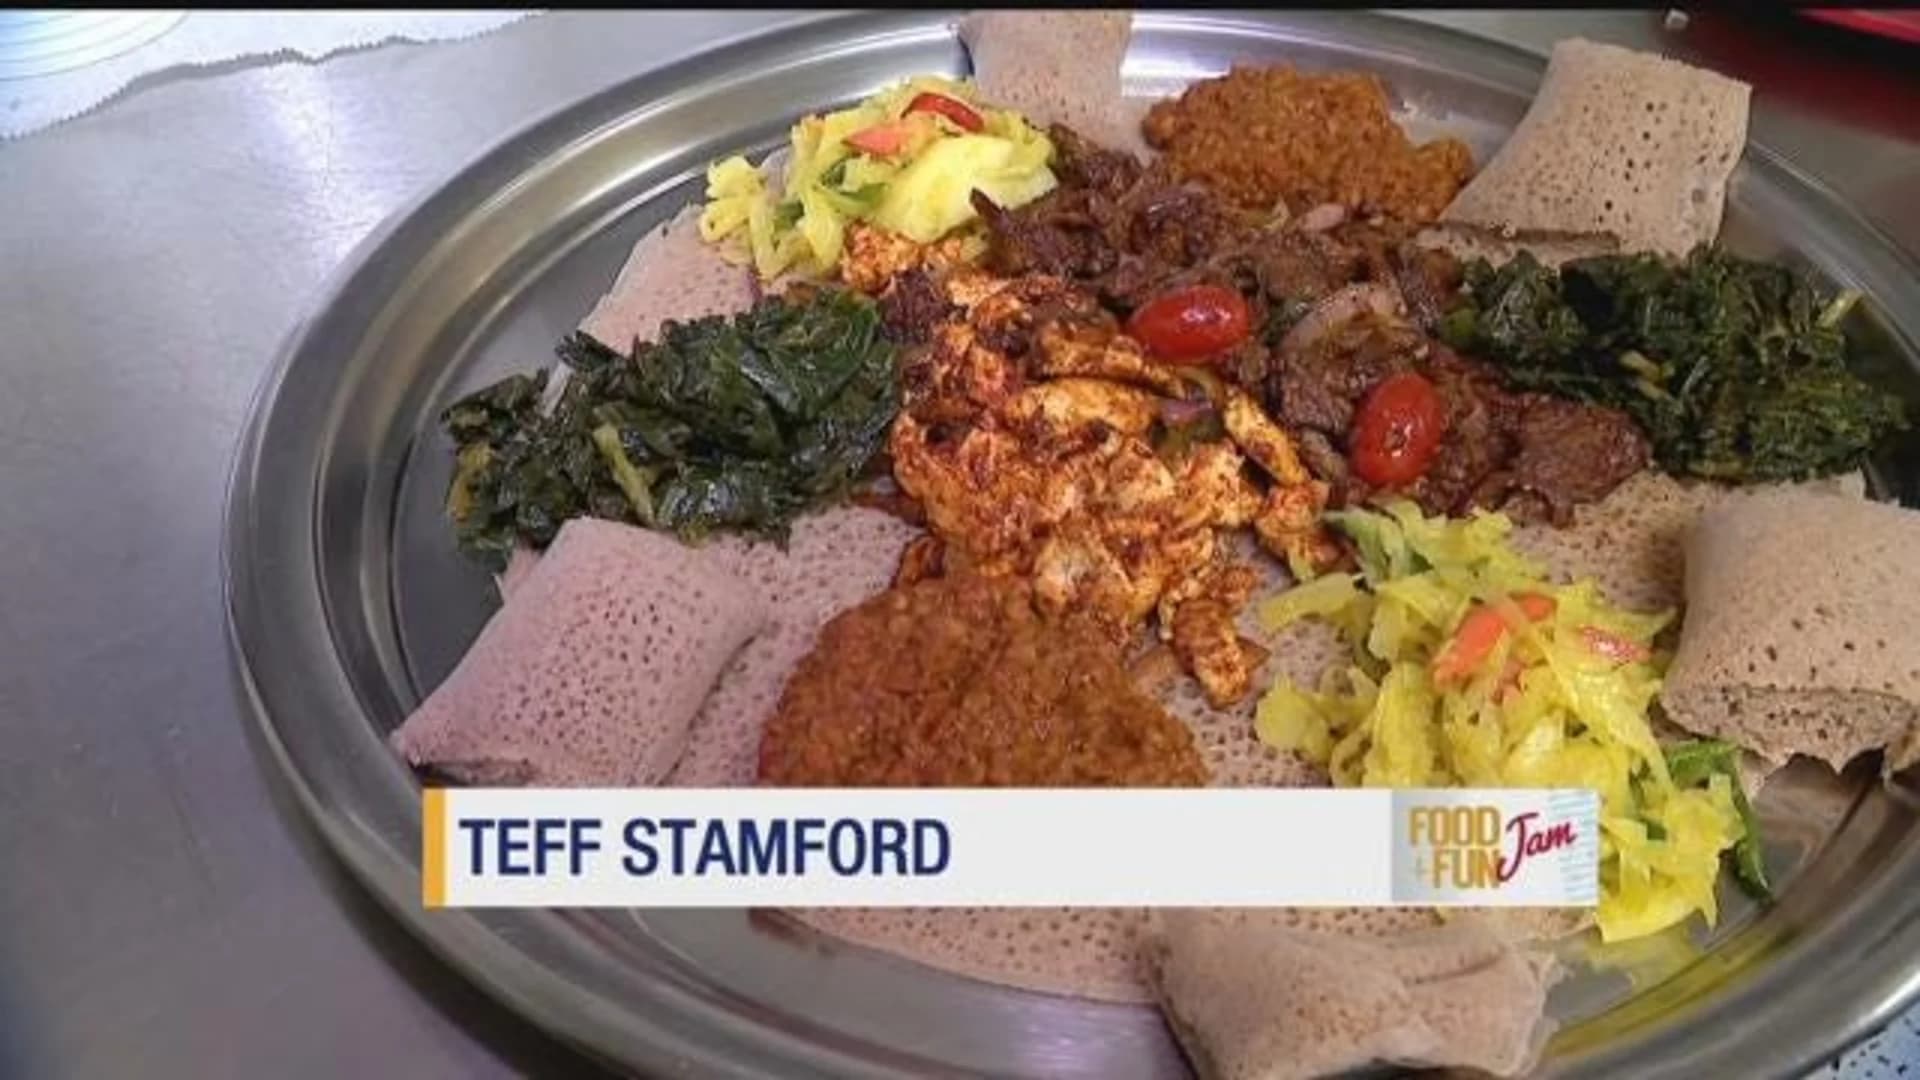 Food & Fun Jam: Teff Stamford